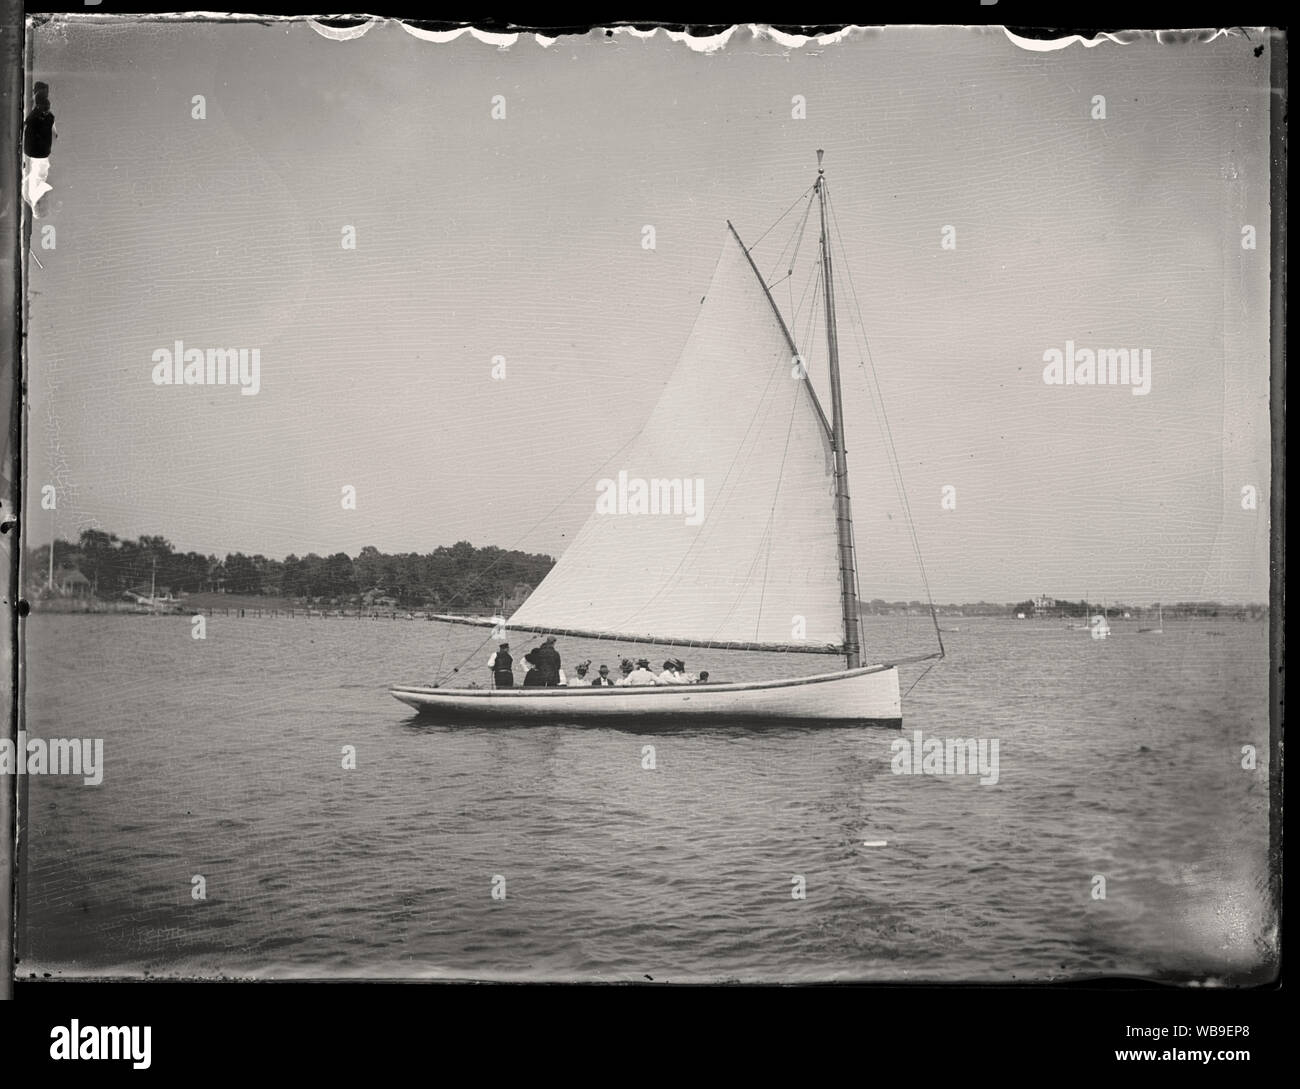 Kleines Segelboot (gaffelrigg mit hohen Piked gaff) auf die entspannenden Tagesausflug rund um eine Bucht oder einen See im Osten der USA, gescannt von Original 3x4 Zoll Glasplatte negativ. Etwa Ende 1890 oder Anfang 1900. Stockfoto